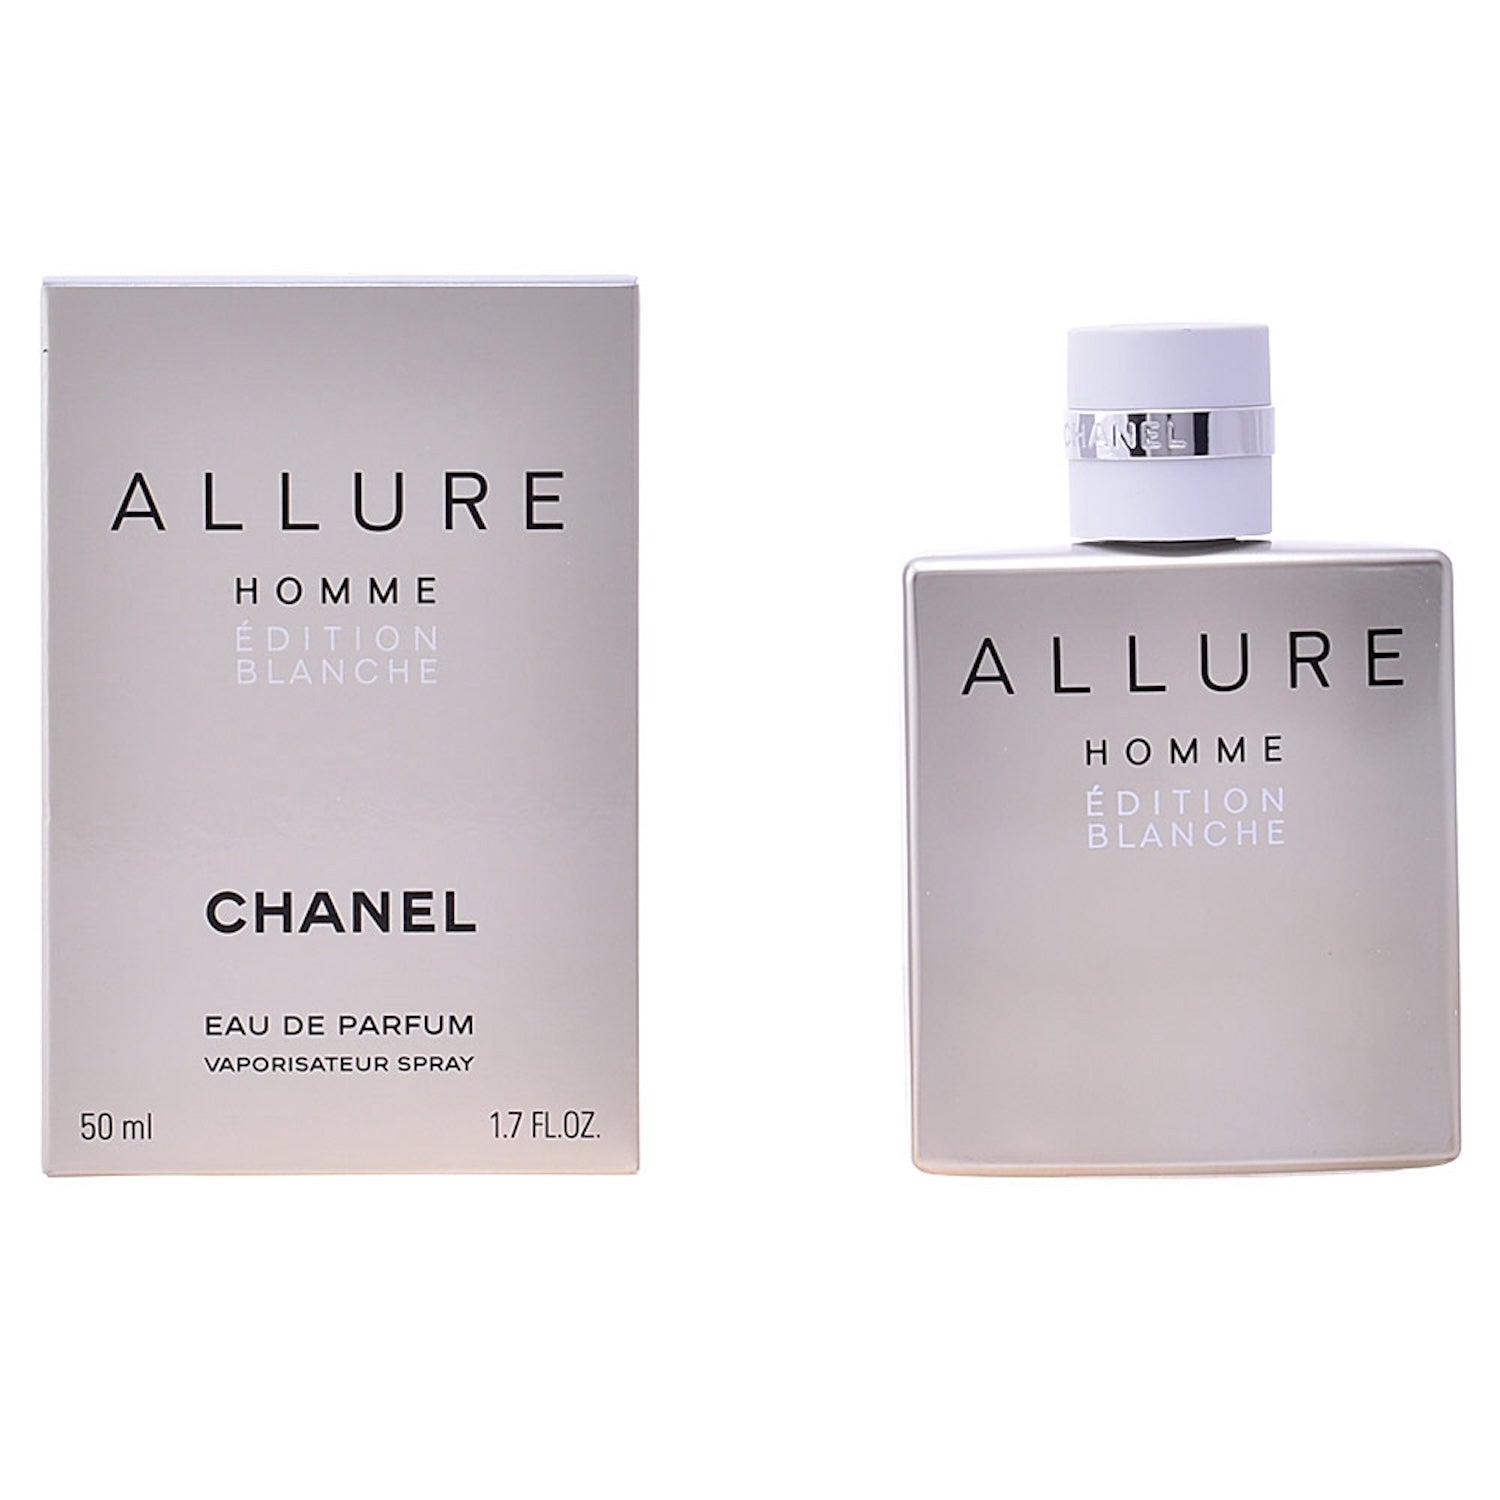 CHANEL ALLURE HOMME ÉDITION BLANCHE Eau de Parfum Spray